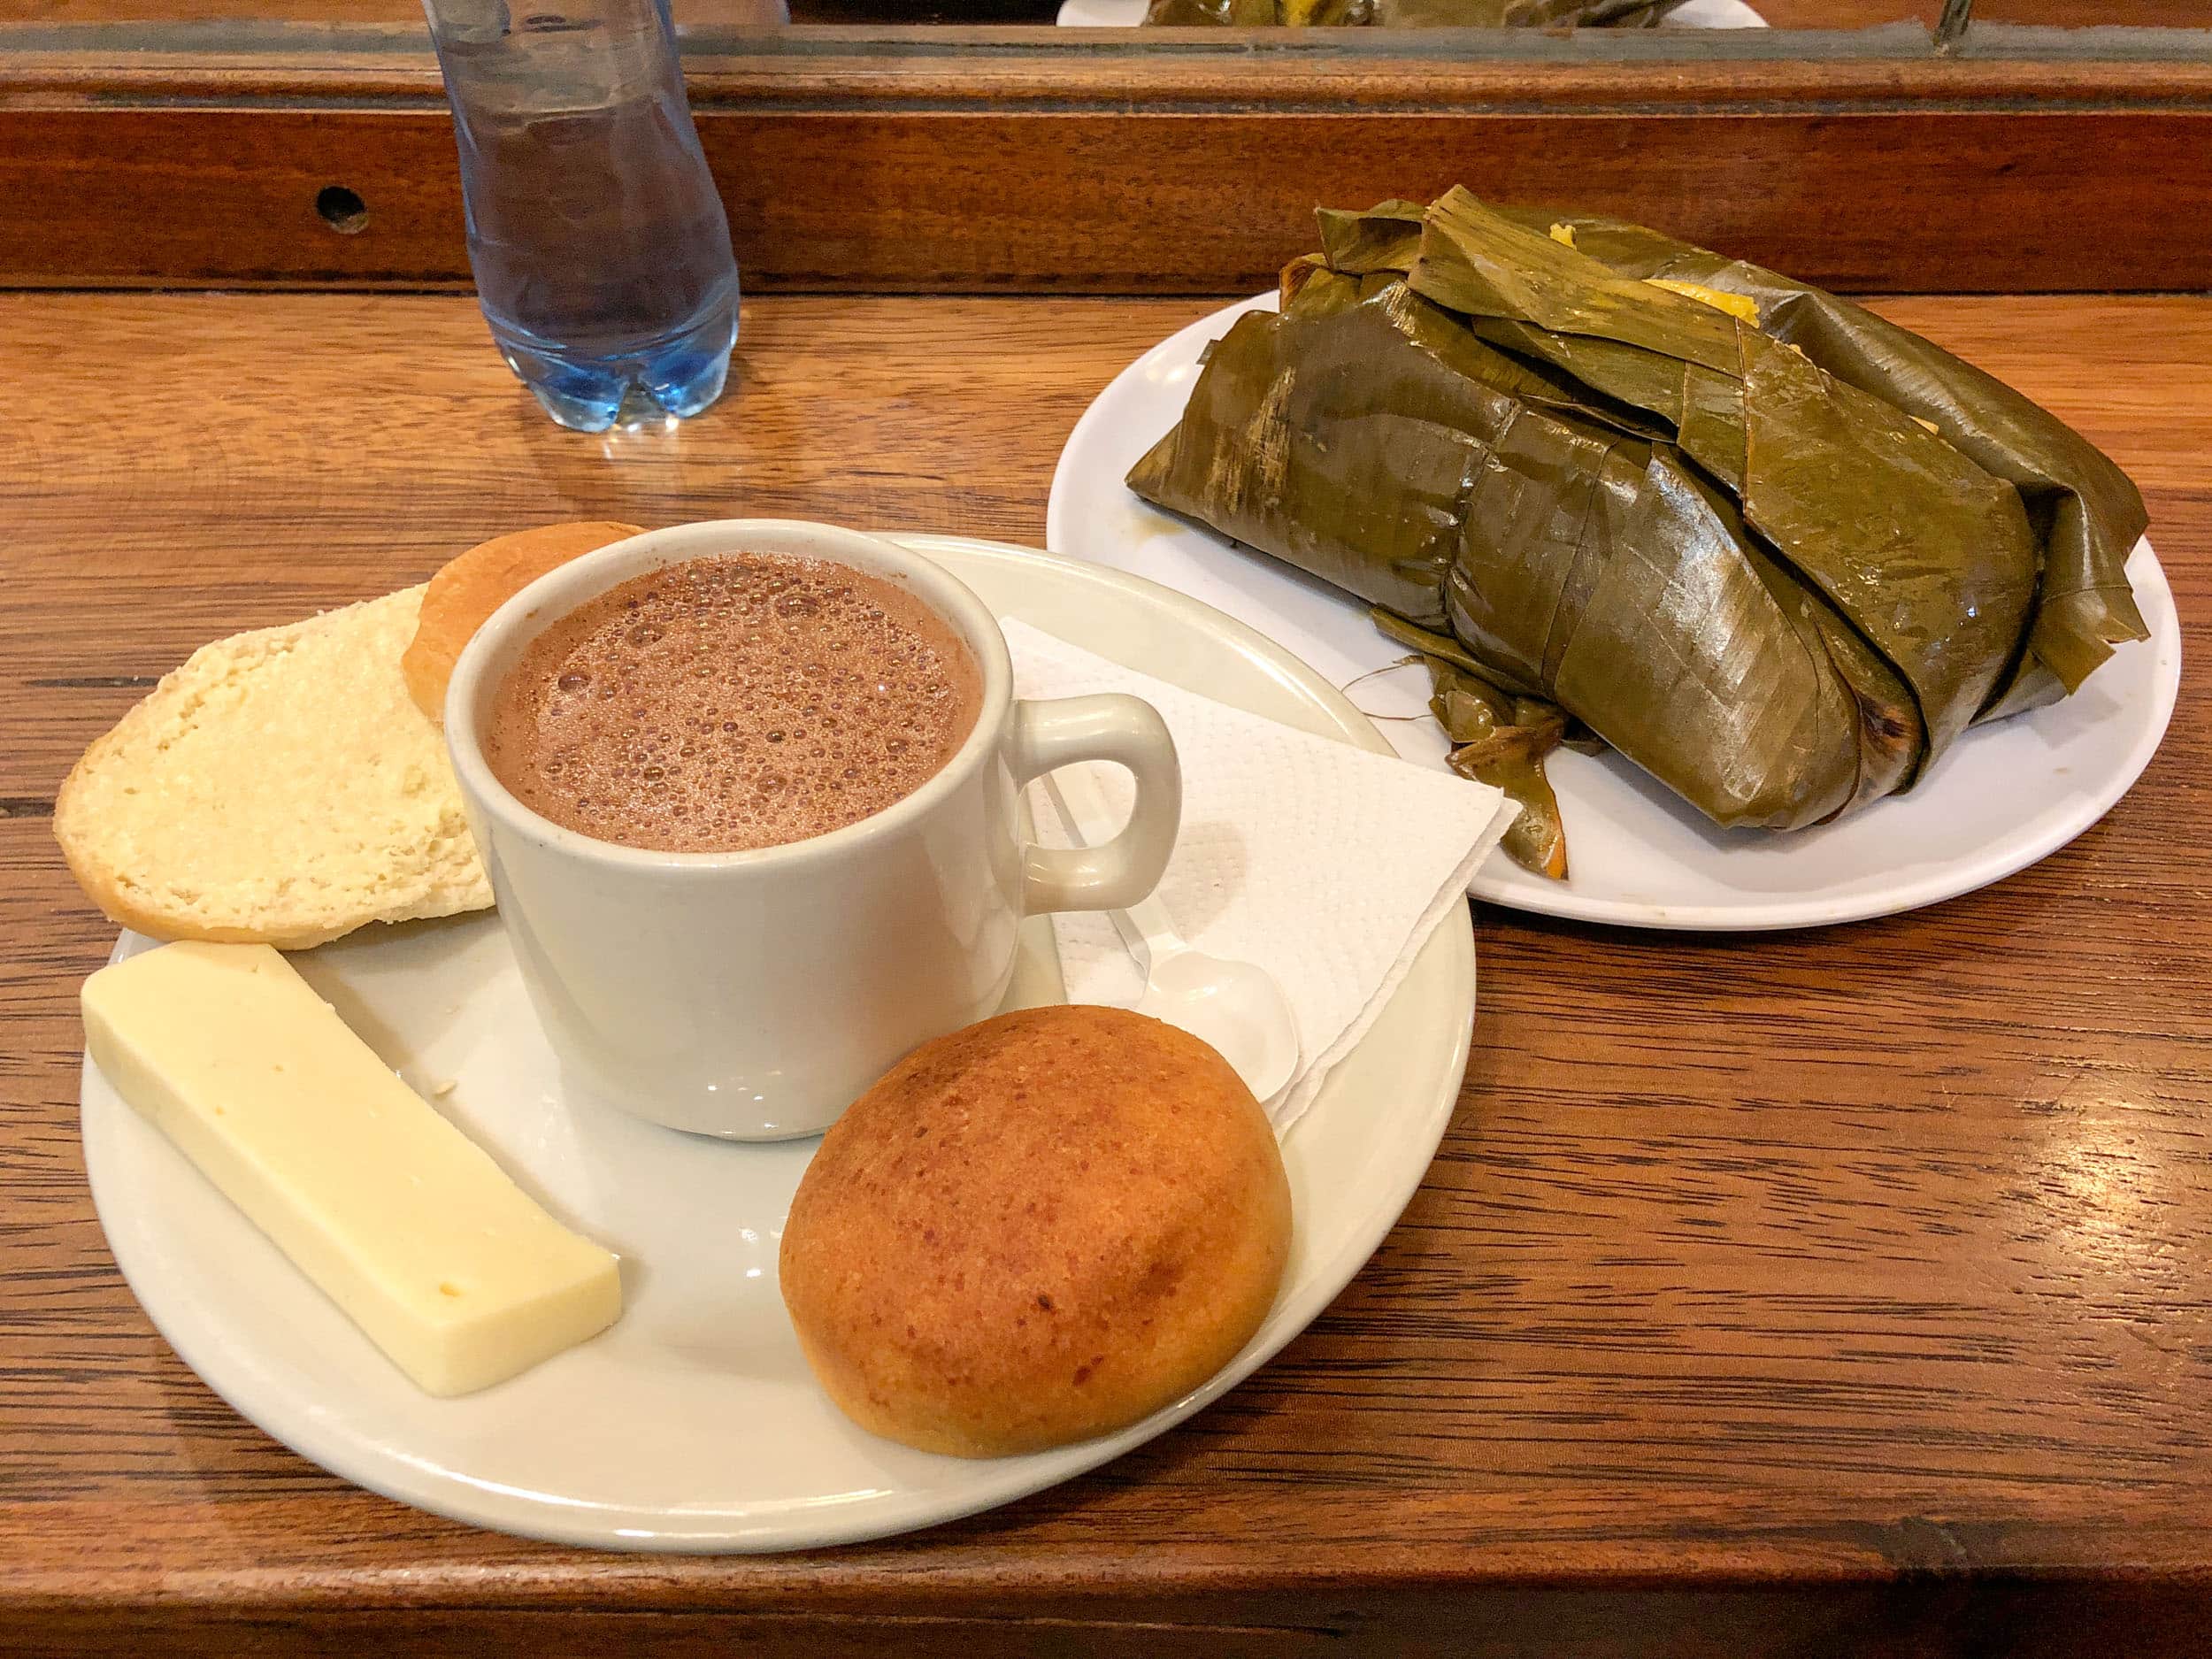 Hot chocolate and cheese at La Puerta Falsa